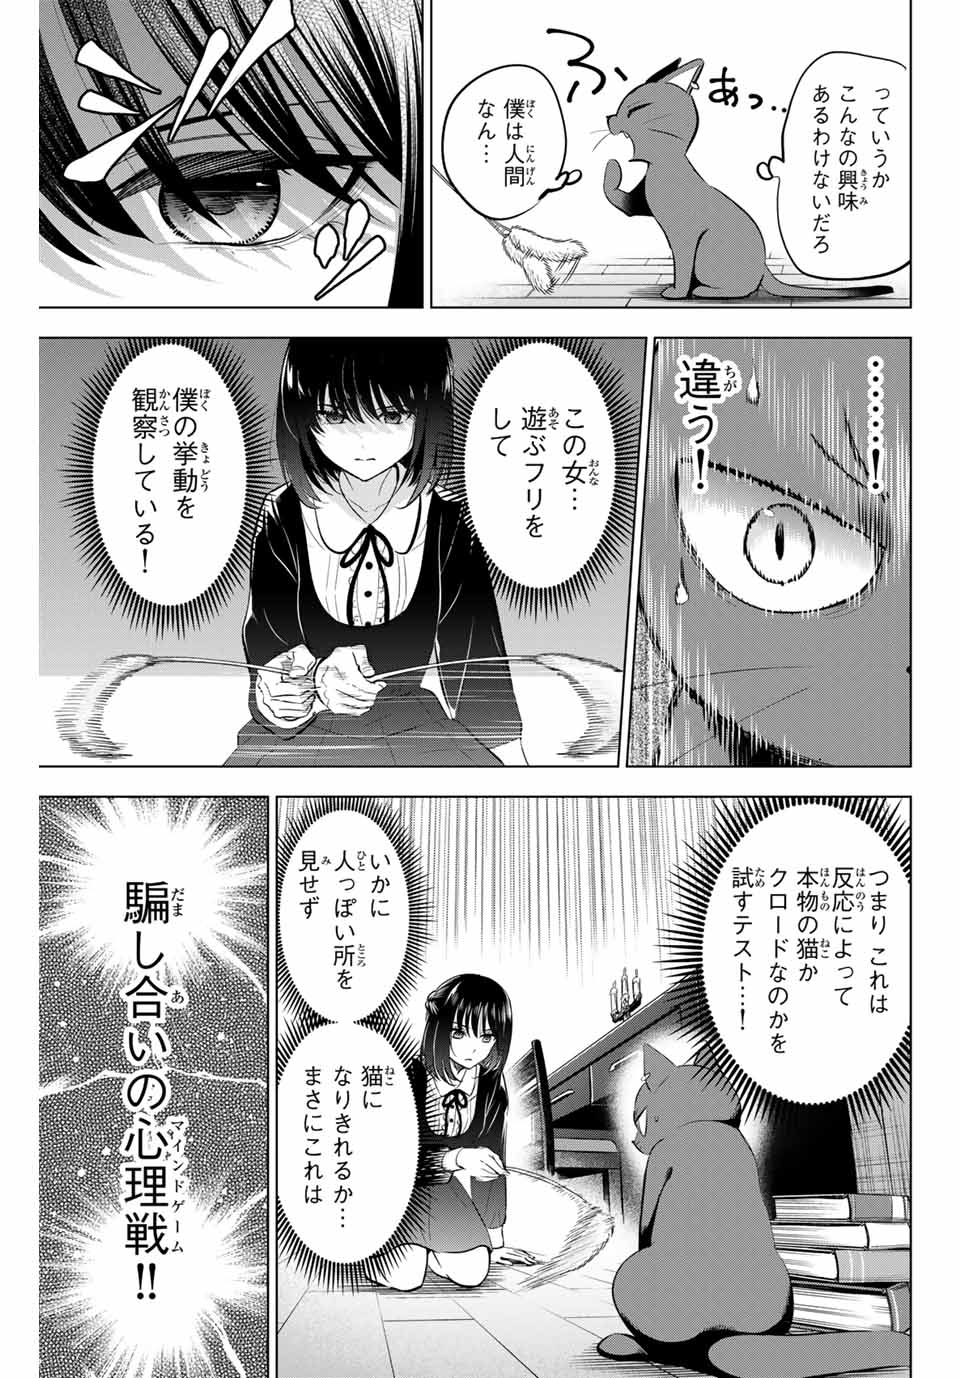 Kuroneko to Majo no Kyoushitsu - Chapter 61 - Page 11